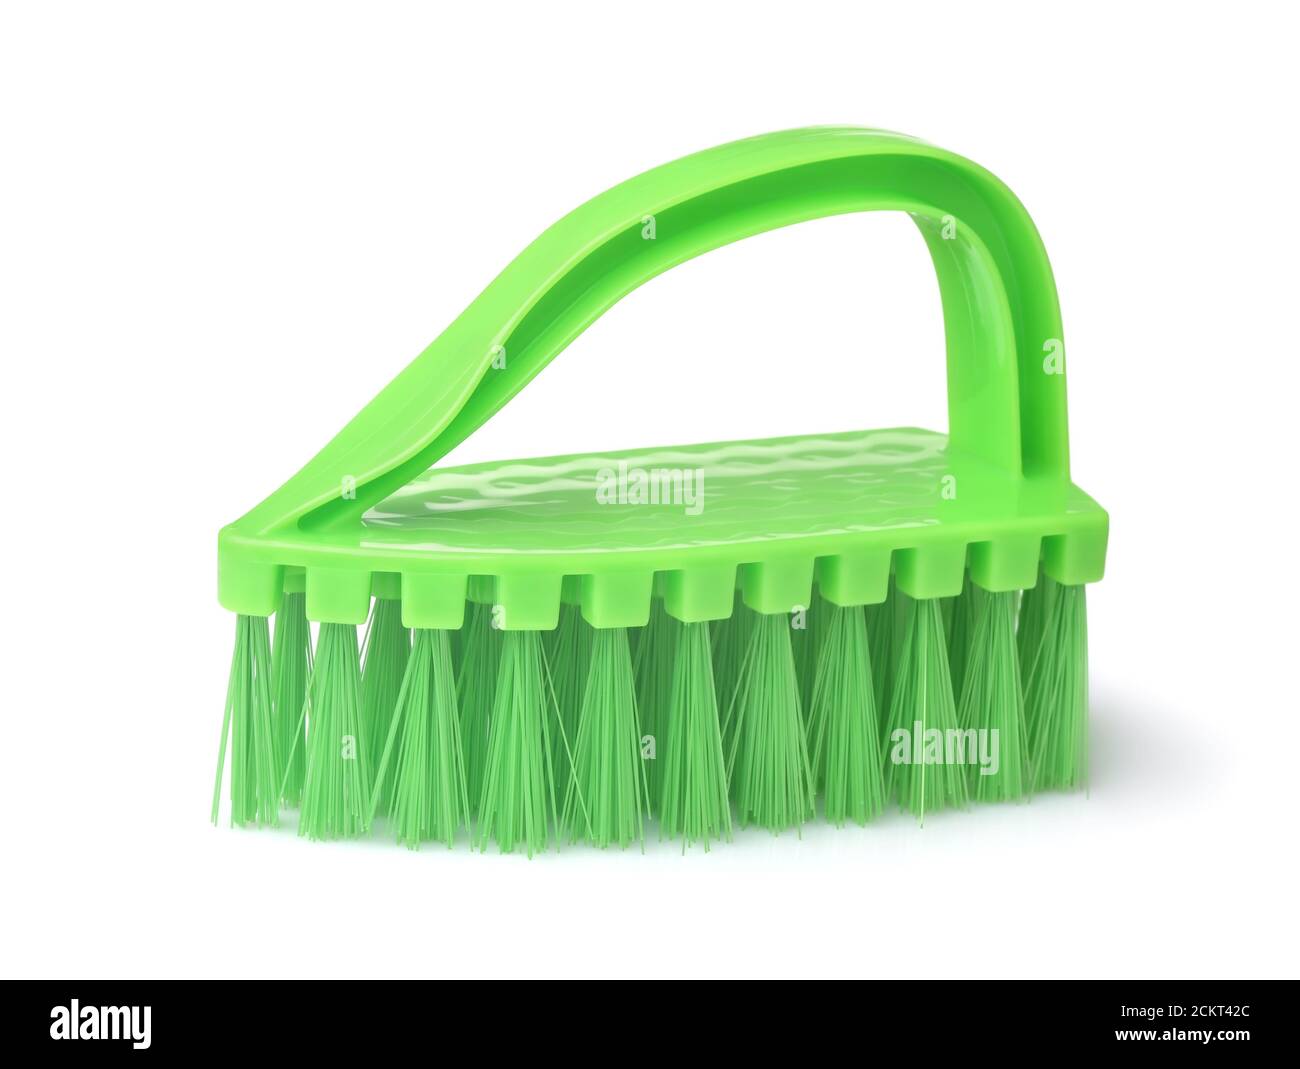 Cepillo de limpieza de ropa de plástico verde aislado en blanco Foto de stock